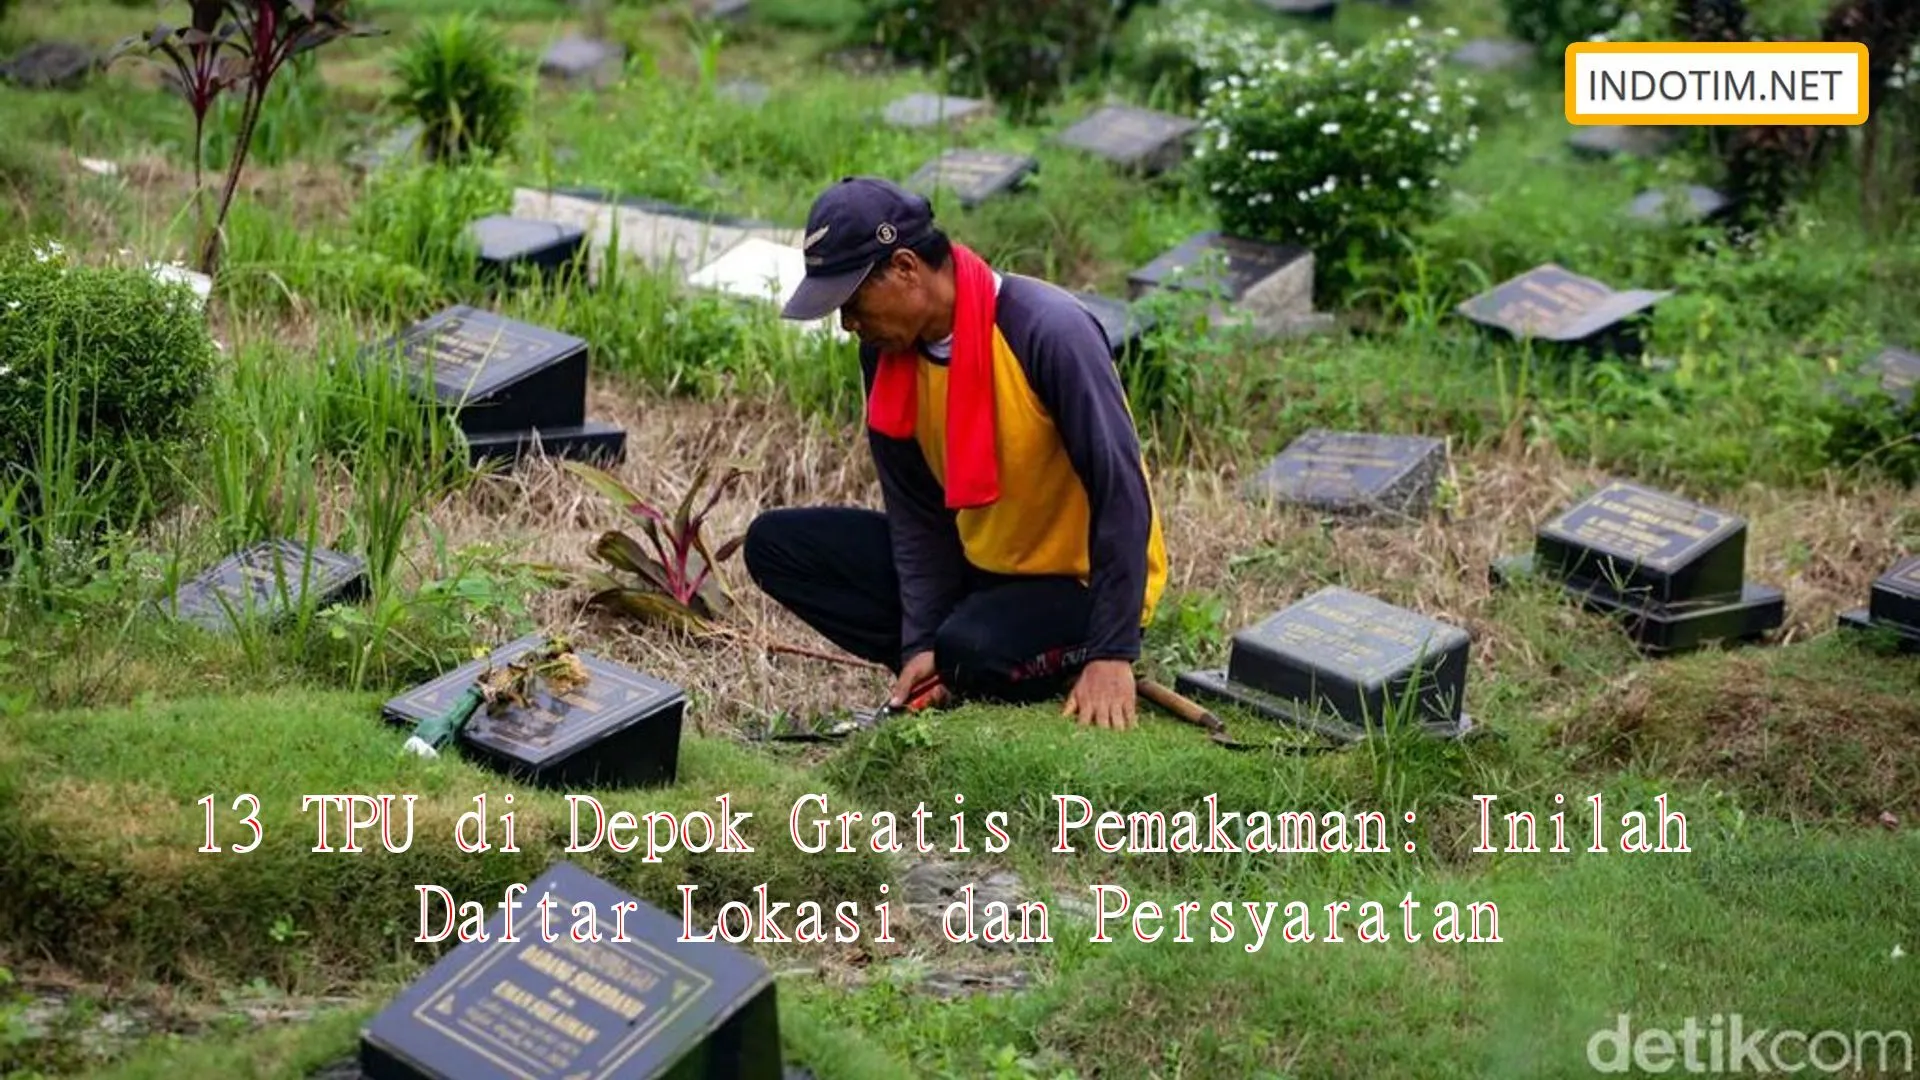 13 TPU di Depok Gratis Pemakaman: Inilah Daftar Lokasi dan Persyaratan